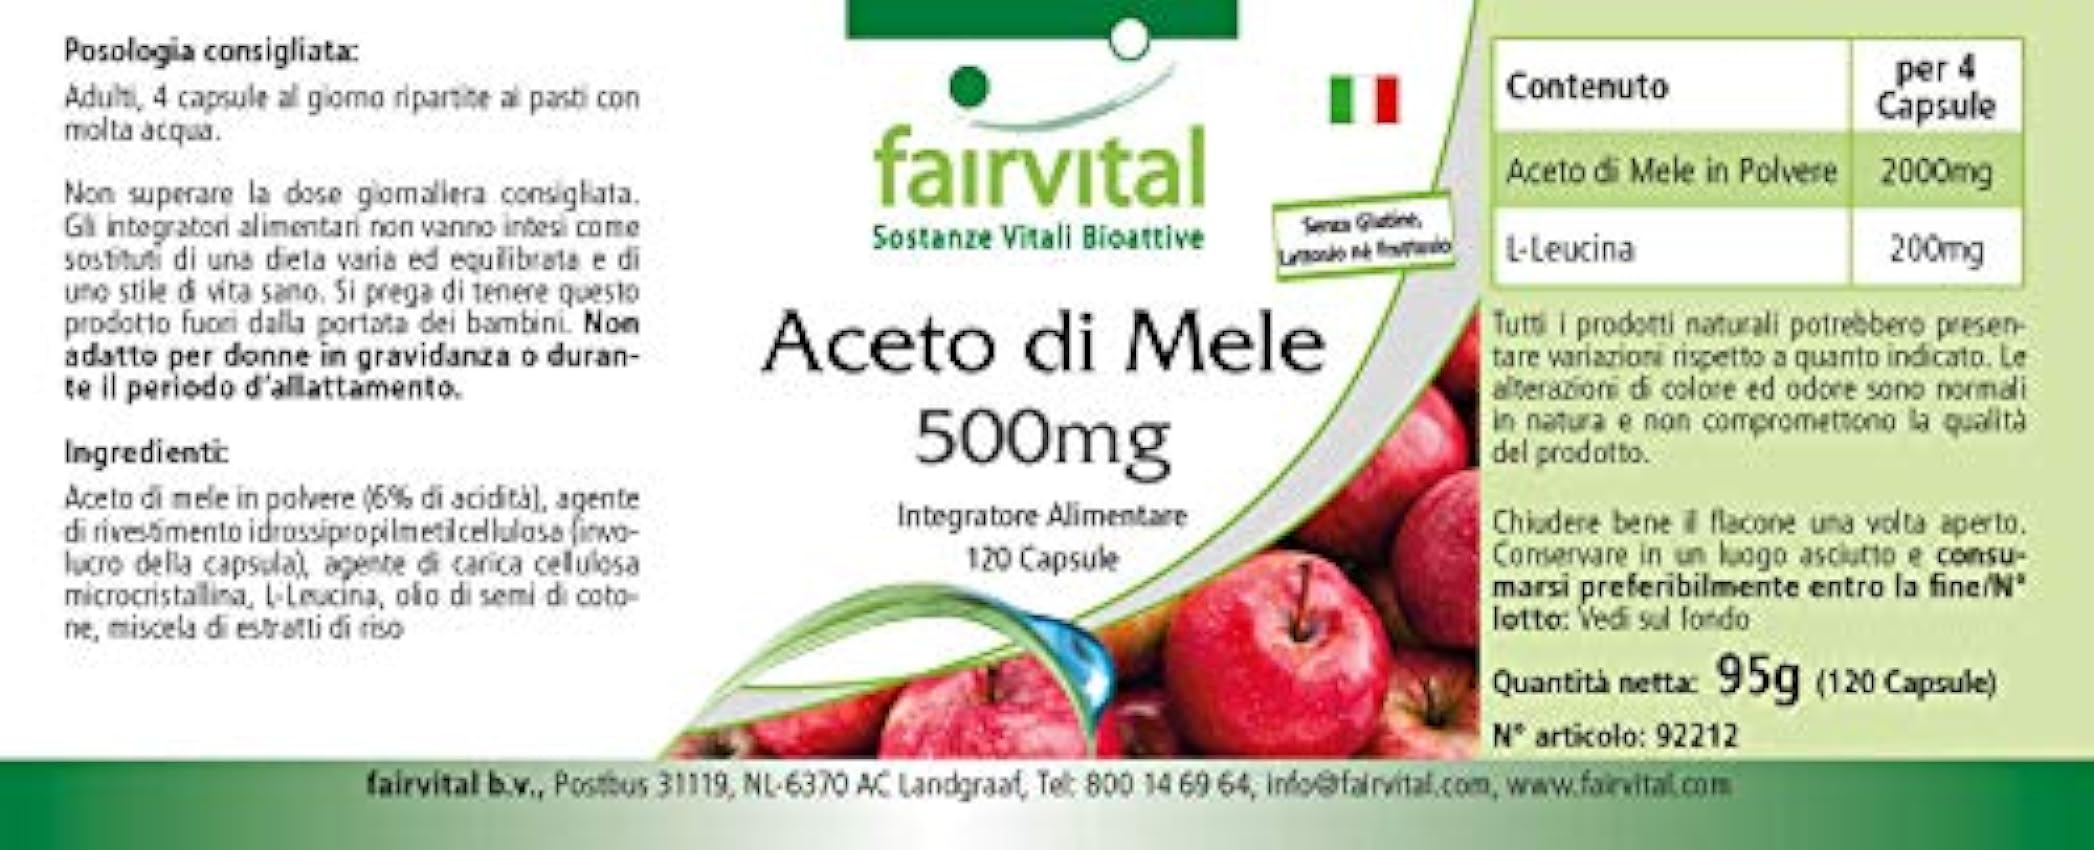 Fairvital | Vinagre de Manzana 500mg - Dosis elevada - VEGANO - 120 Cápsulas - Calidad Alemana Mx6WXToX